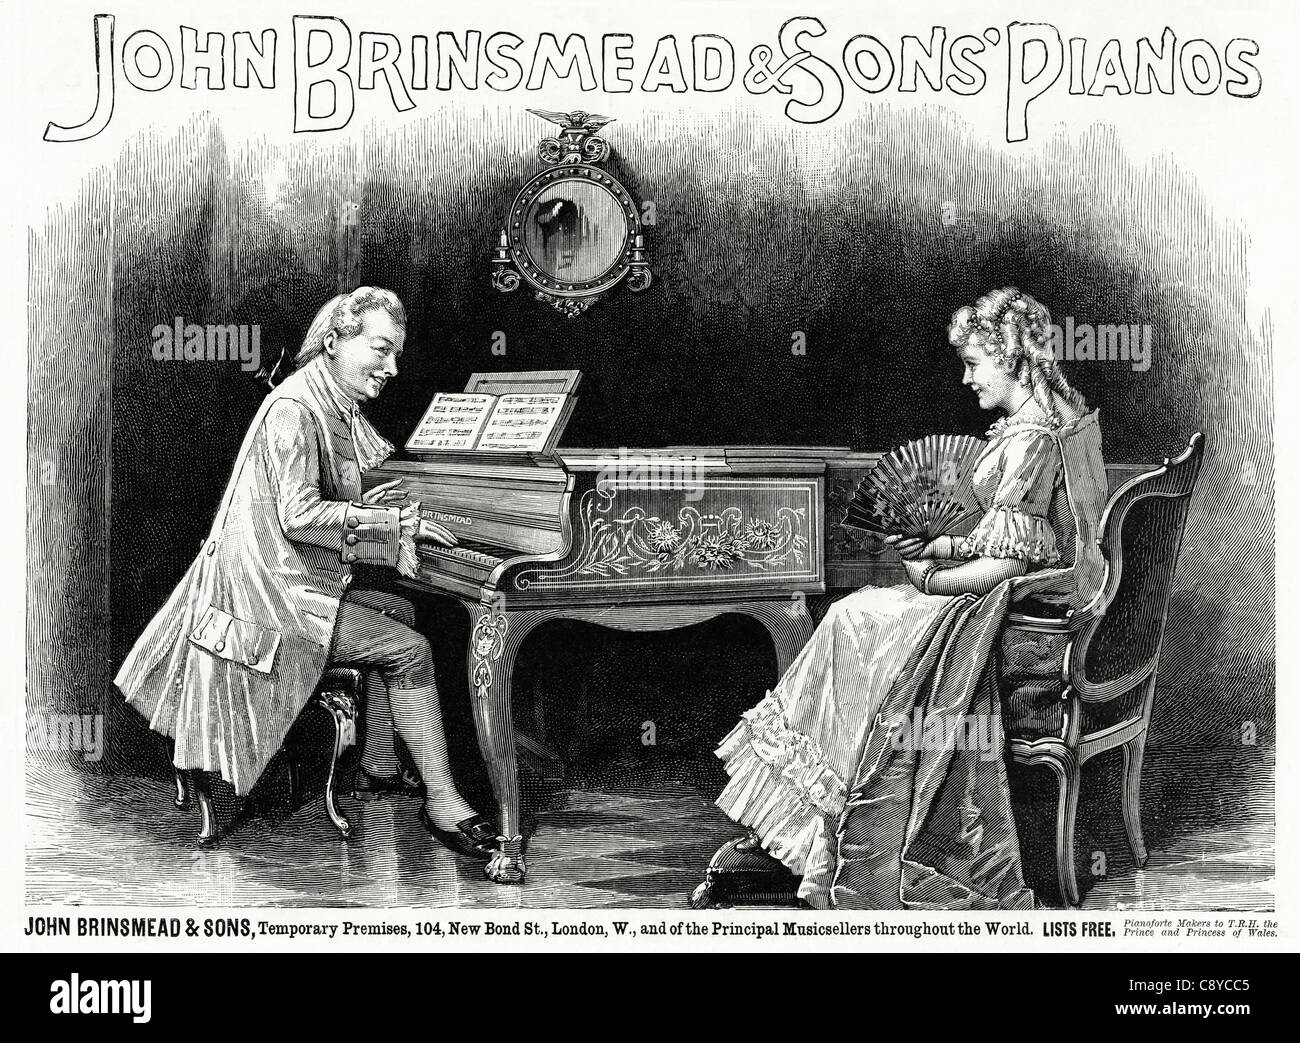 JOHN BRINSMEAD & SONS pianoforti annuncio. Vittoriano originale annuncio circa 1892 pubblicità Foto Stock